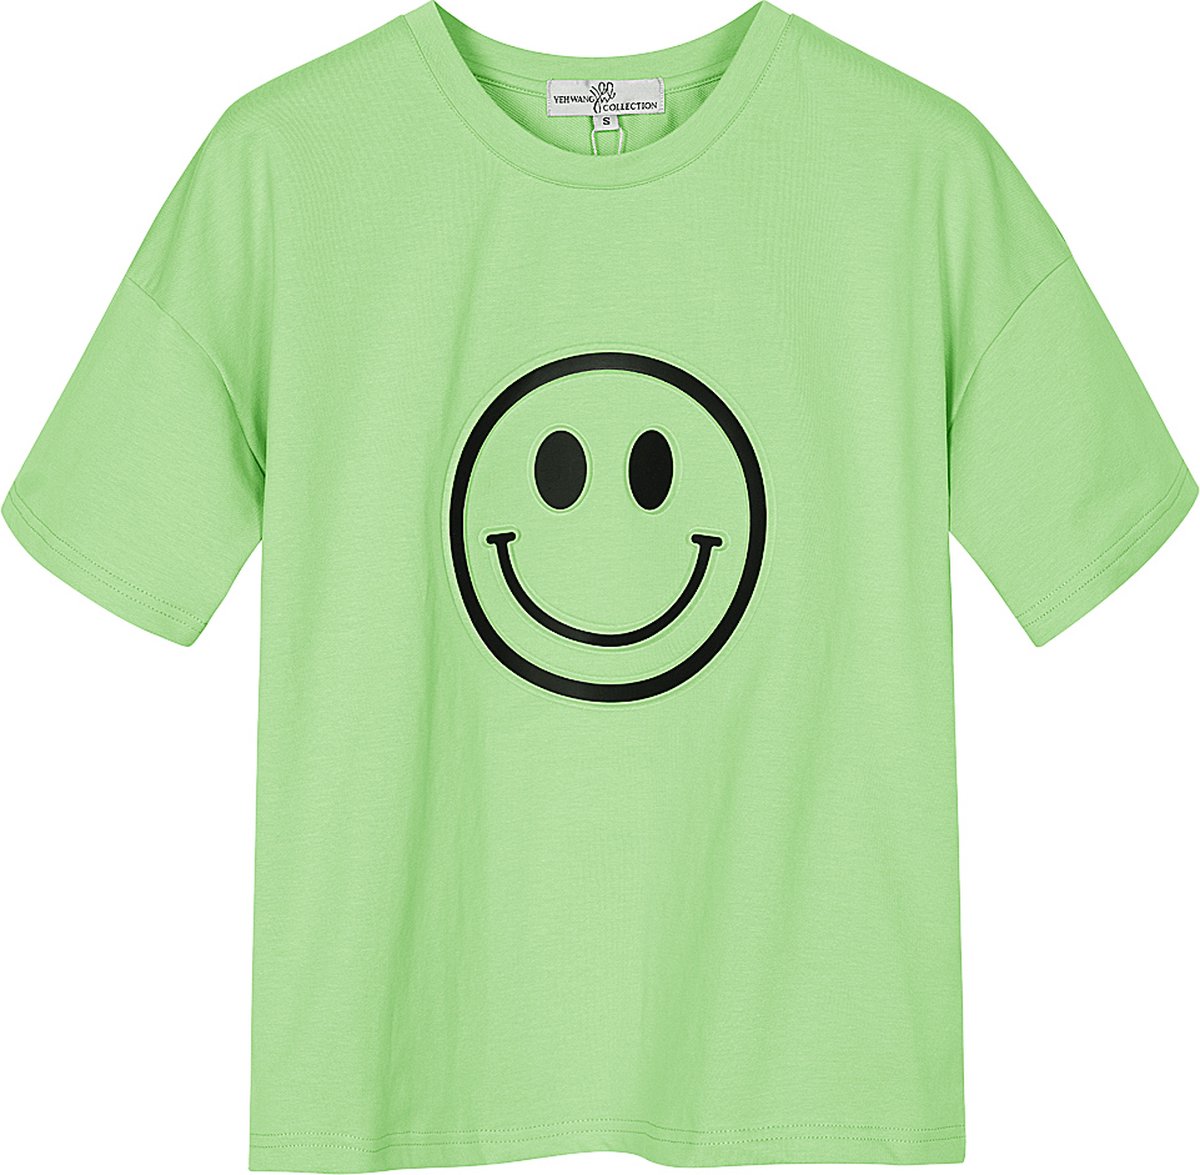 Yehwang - T-shirt met smiley - Appel groen - Maat: S